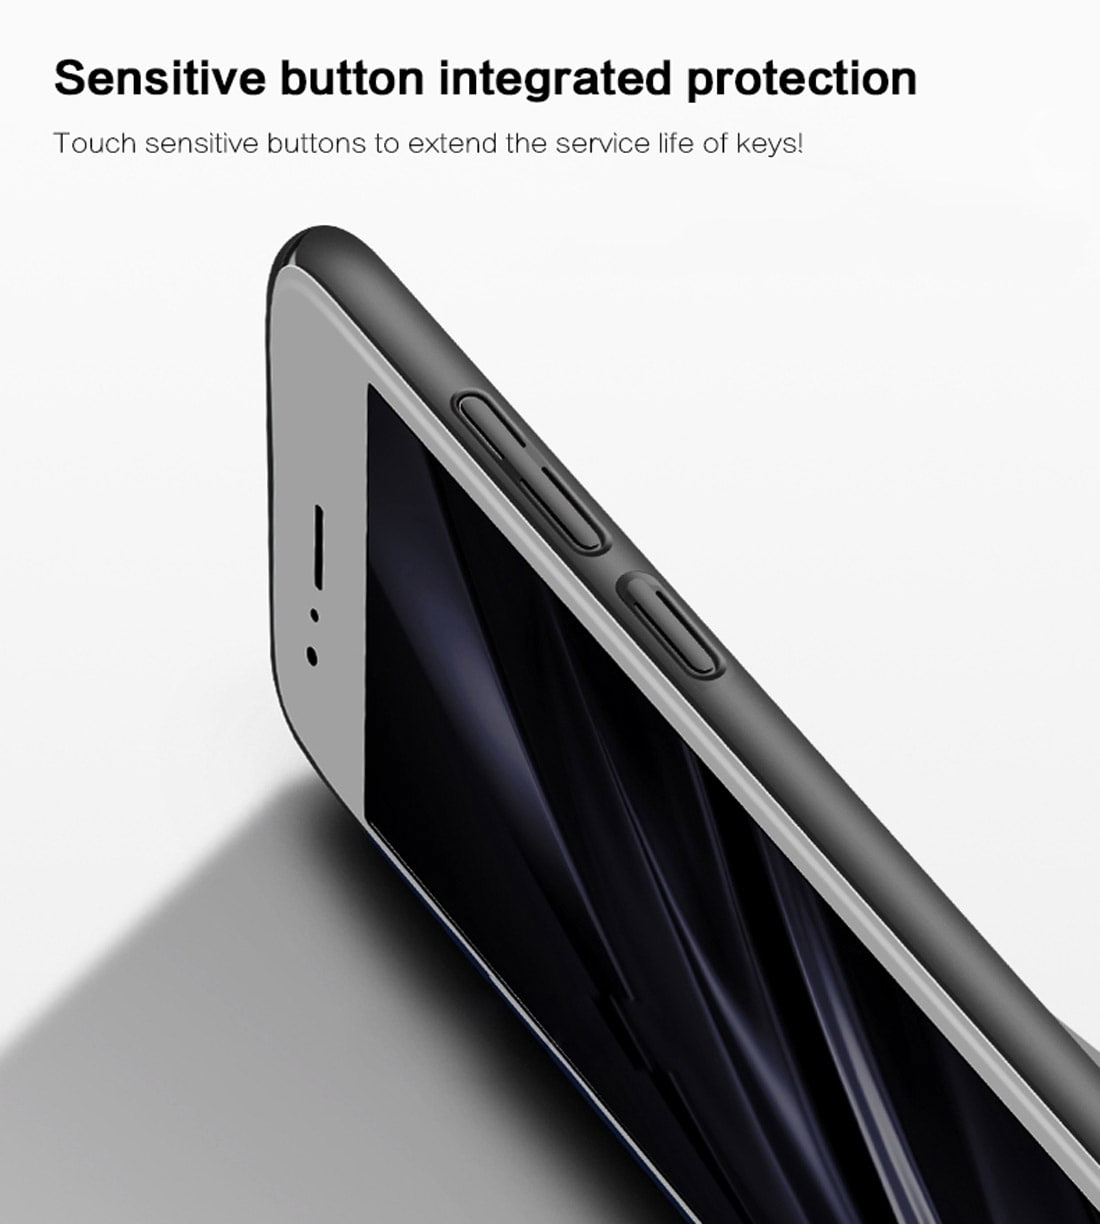 Supertynt mobilskall / futteral for Motorola Moto G5S Plus – Blå metallic